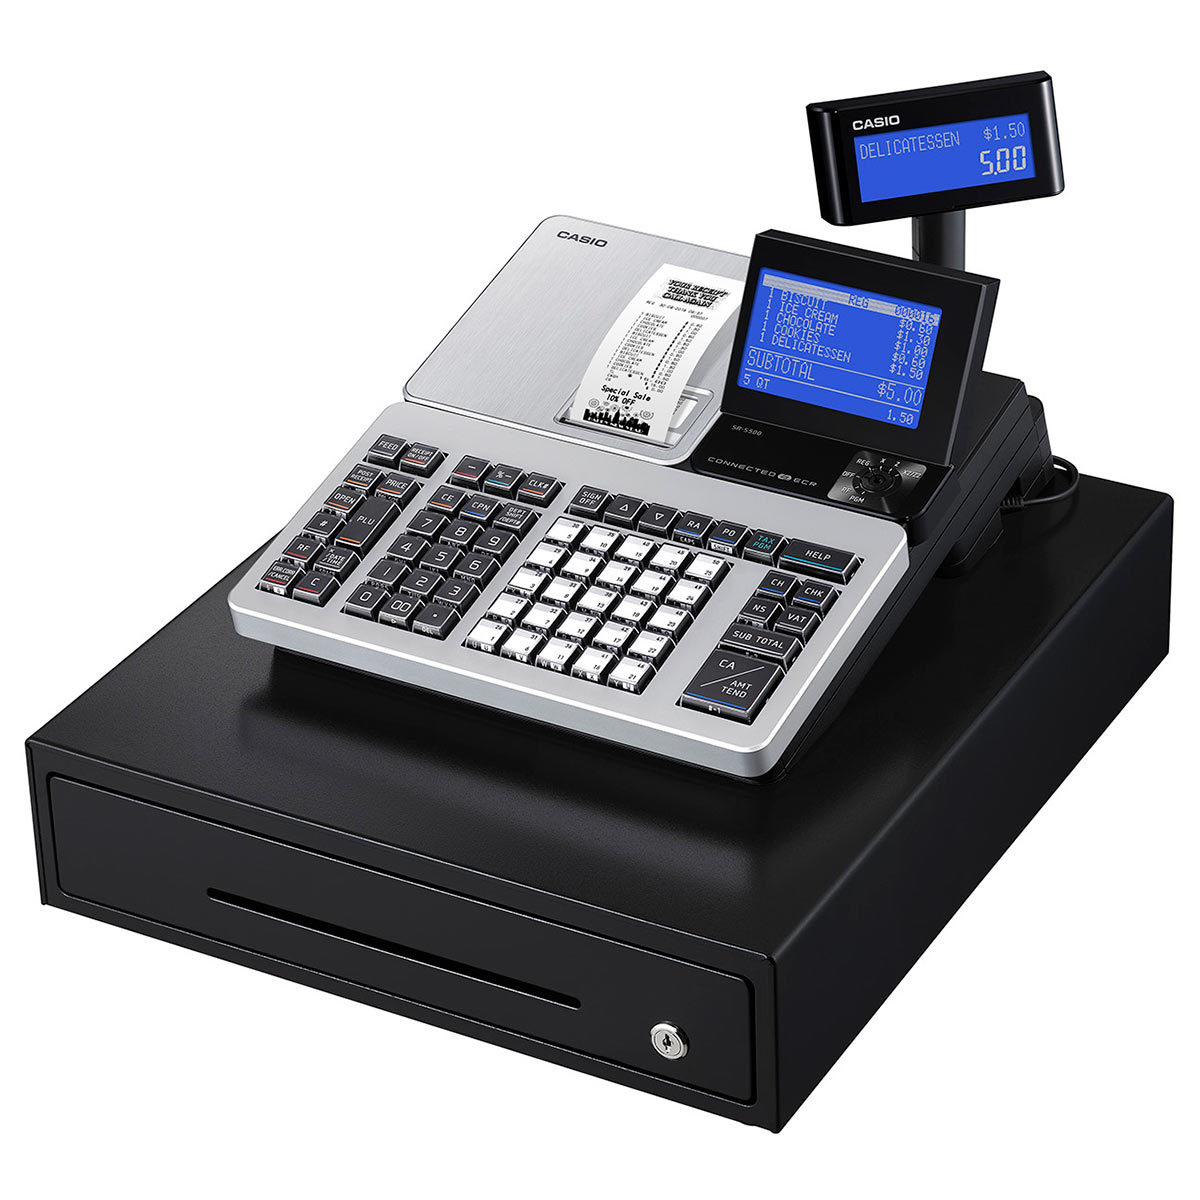 cash register image